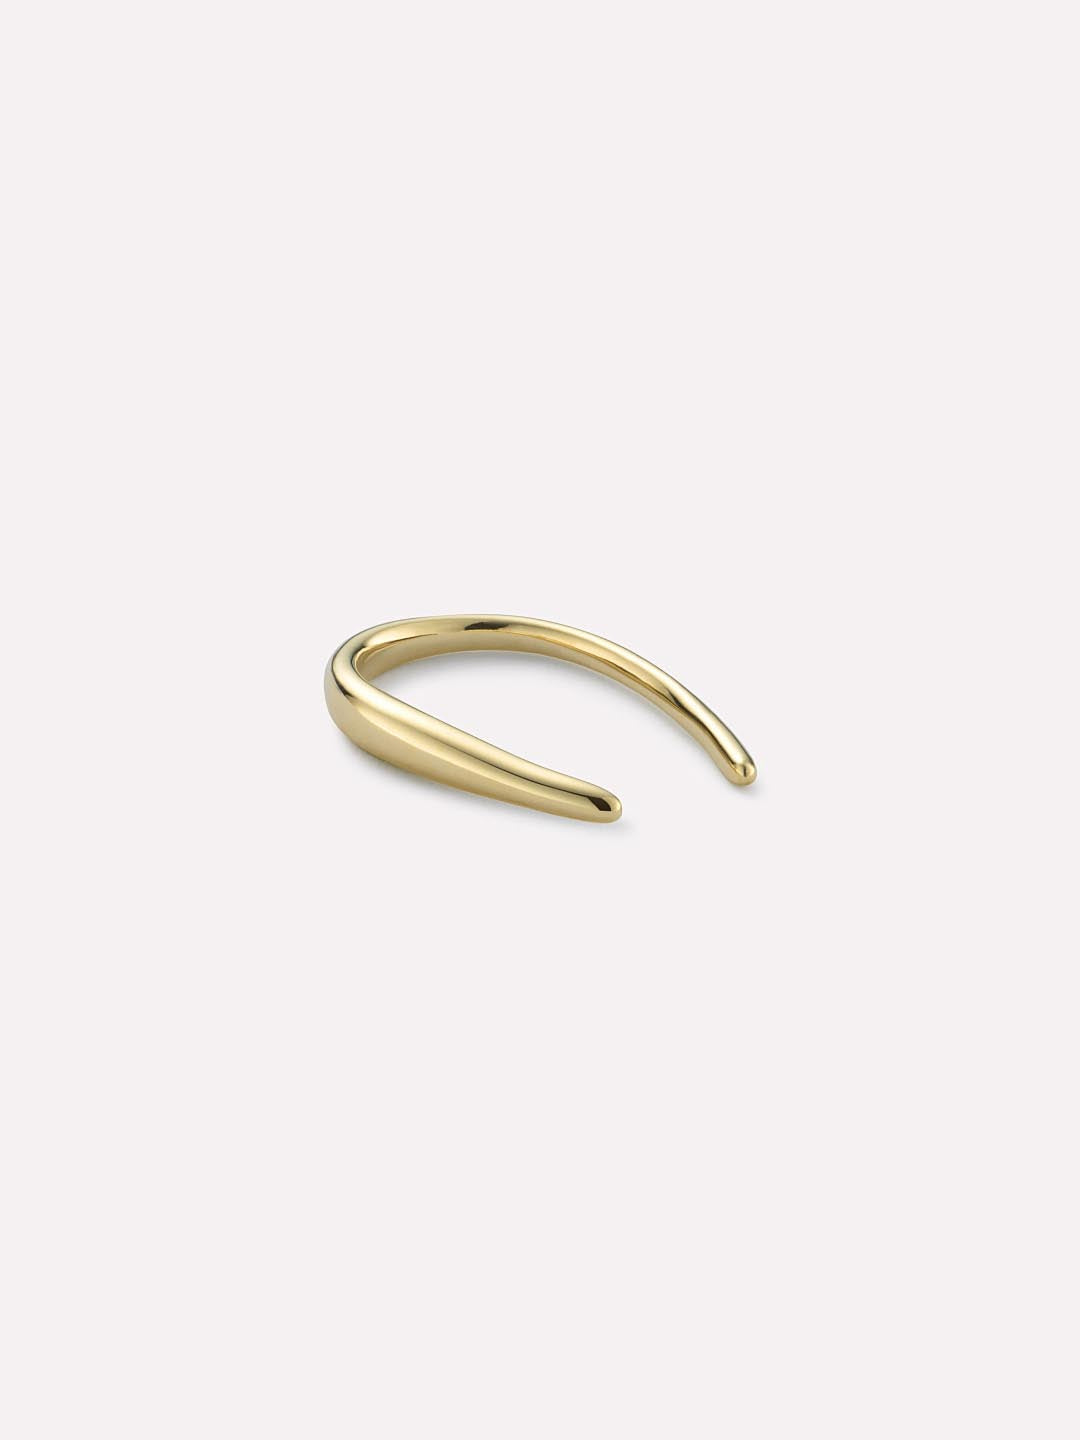 Solid Gold Hook Earrings - Gold Hook Single Earring - Ana Luisa Jewelry